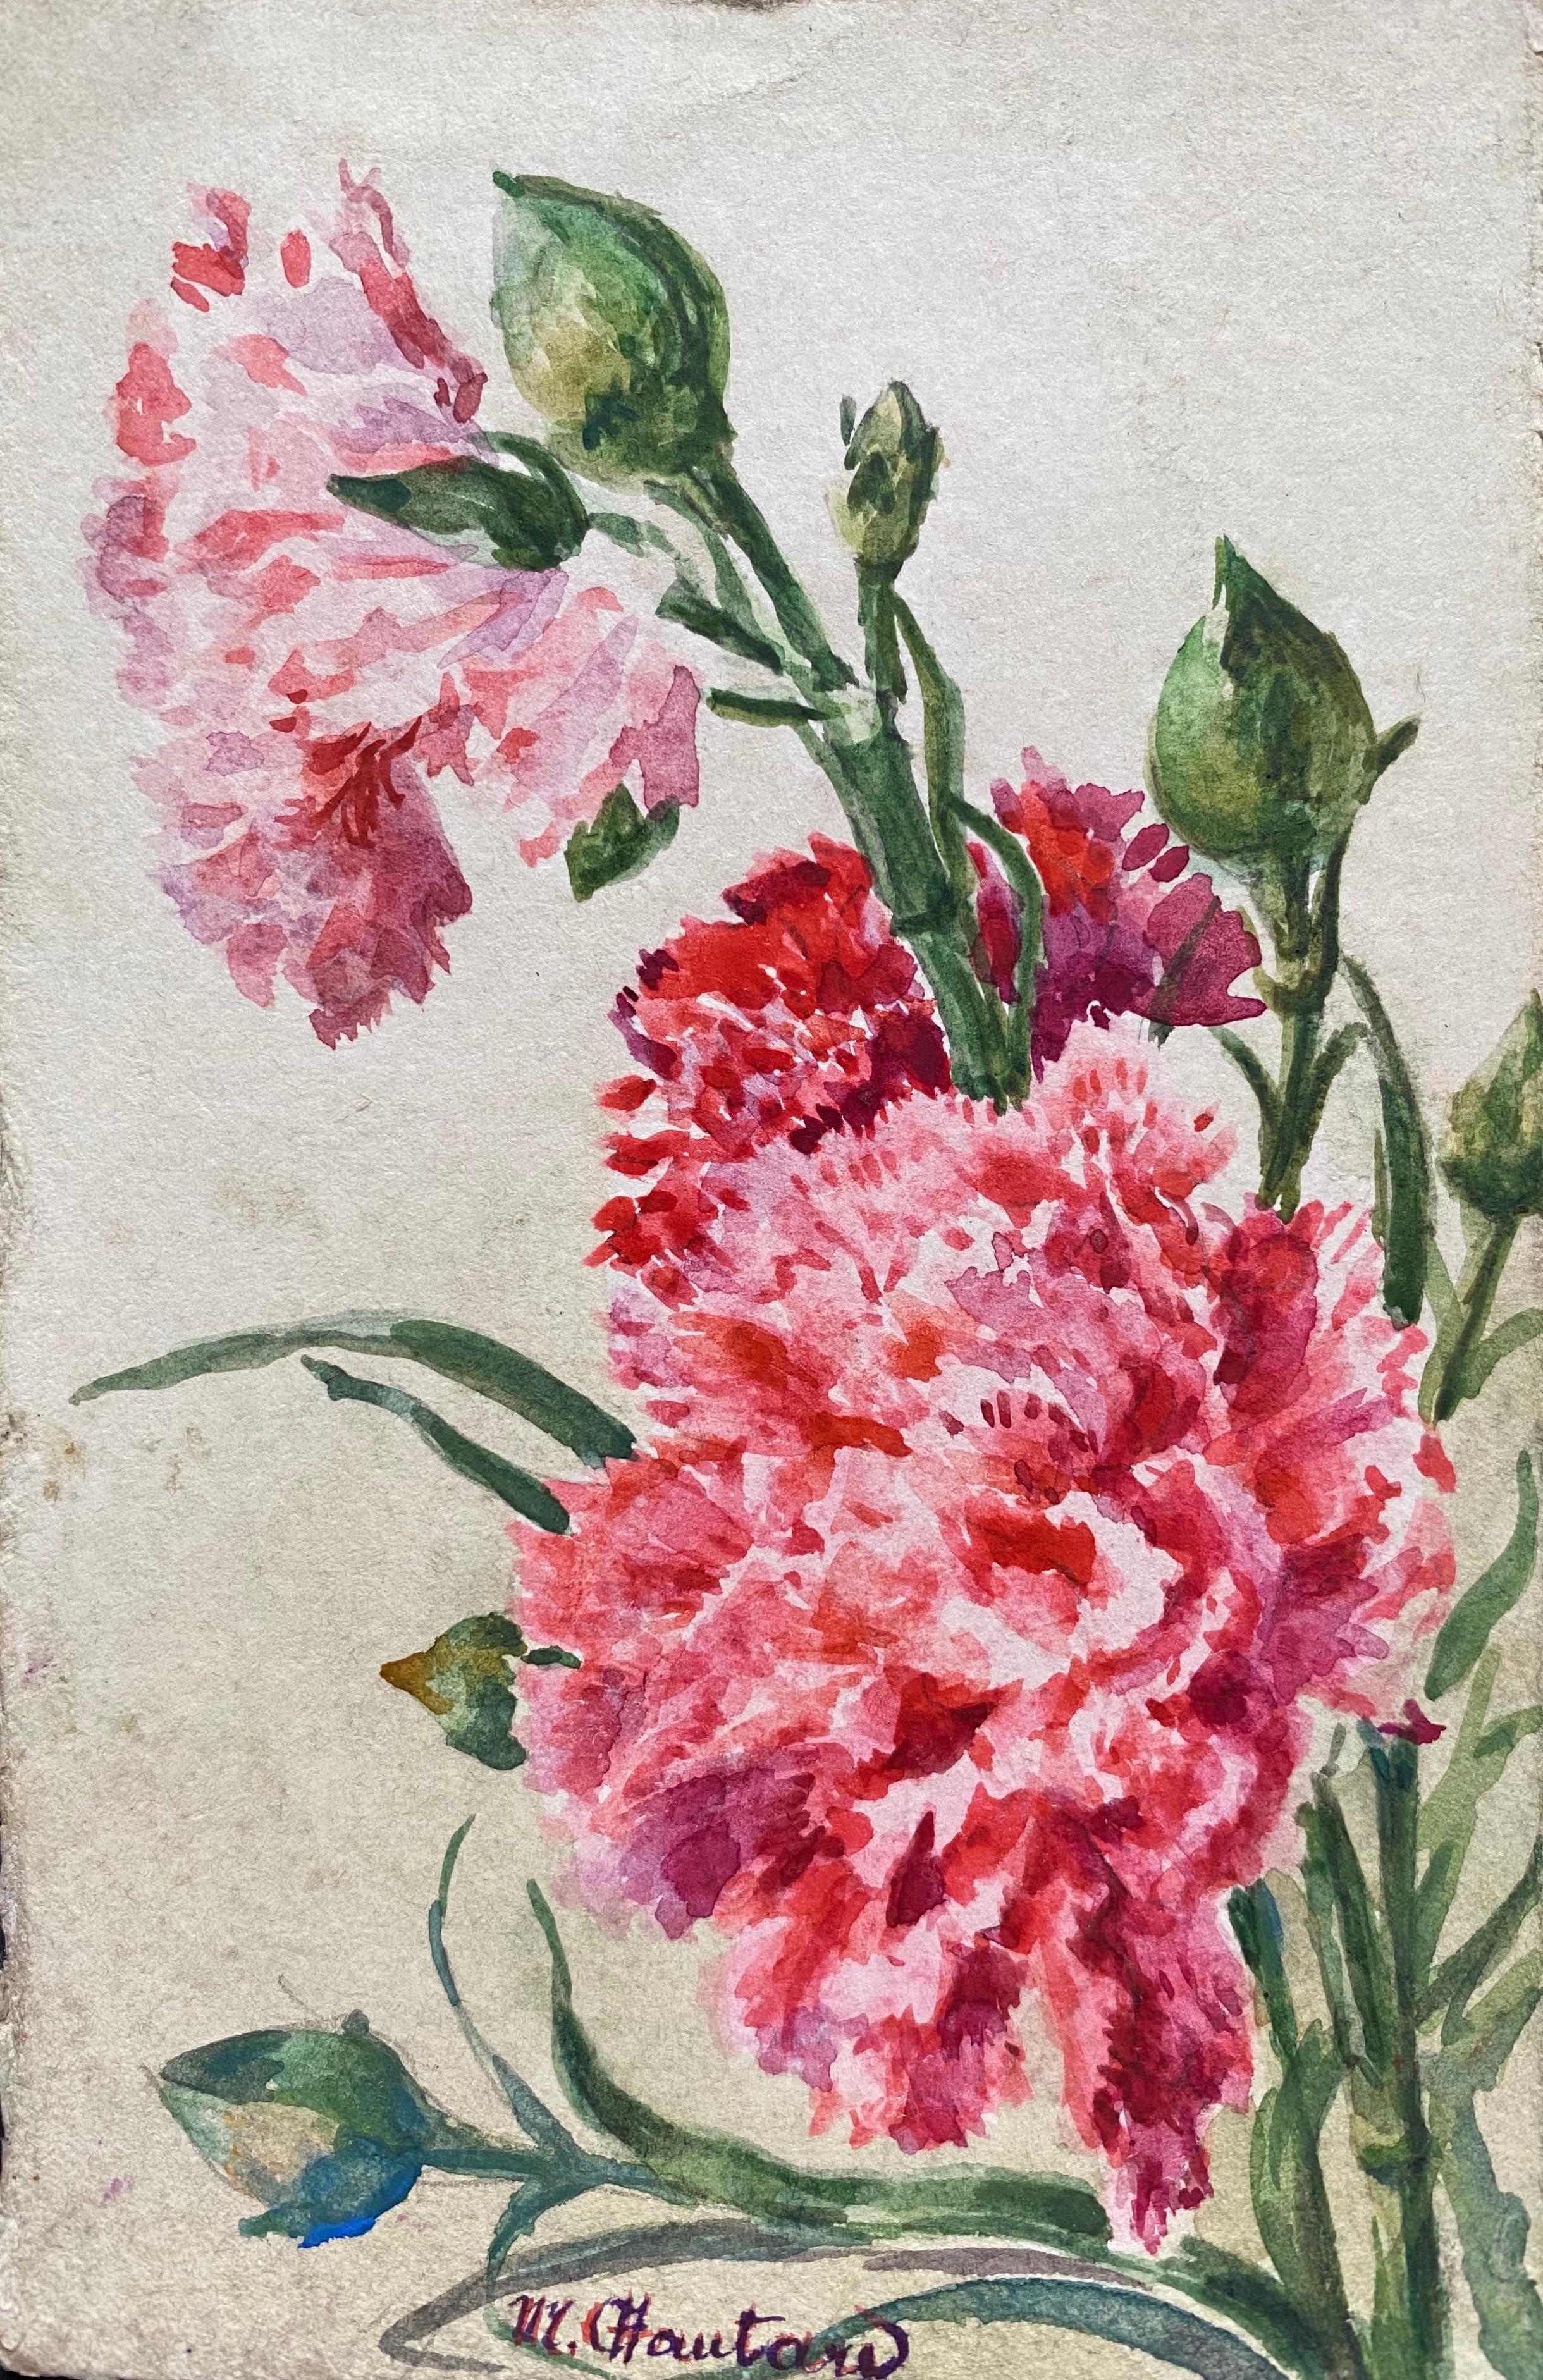 3 x  Aquarelles de fleurs impressionnistes françaises des années 1900 signées Marie Carreau - Marron Still-Life par Marie-Amelie Chautard-Carreau